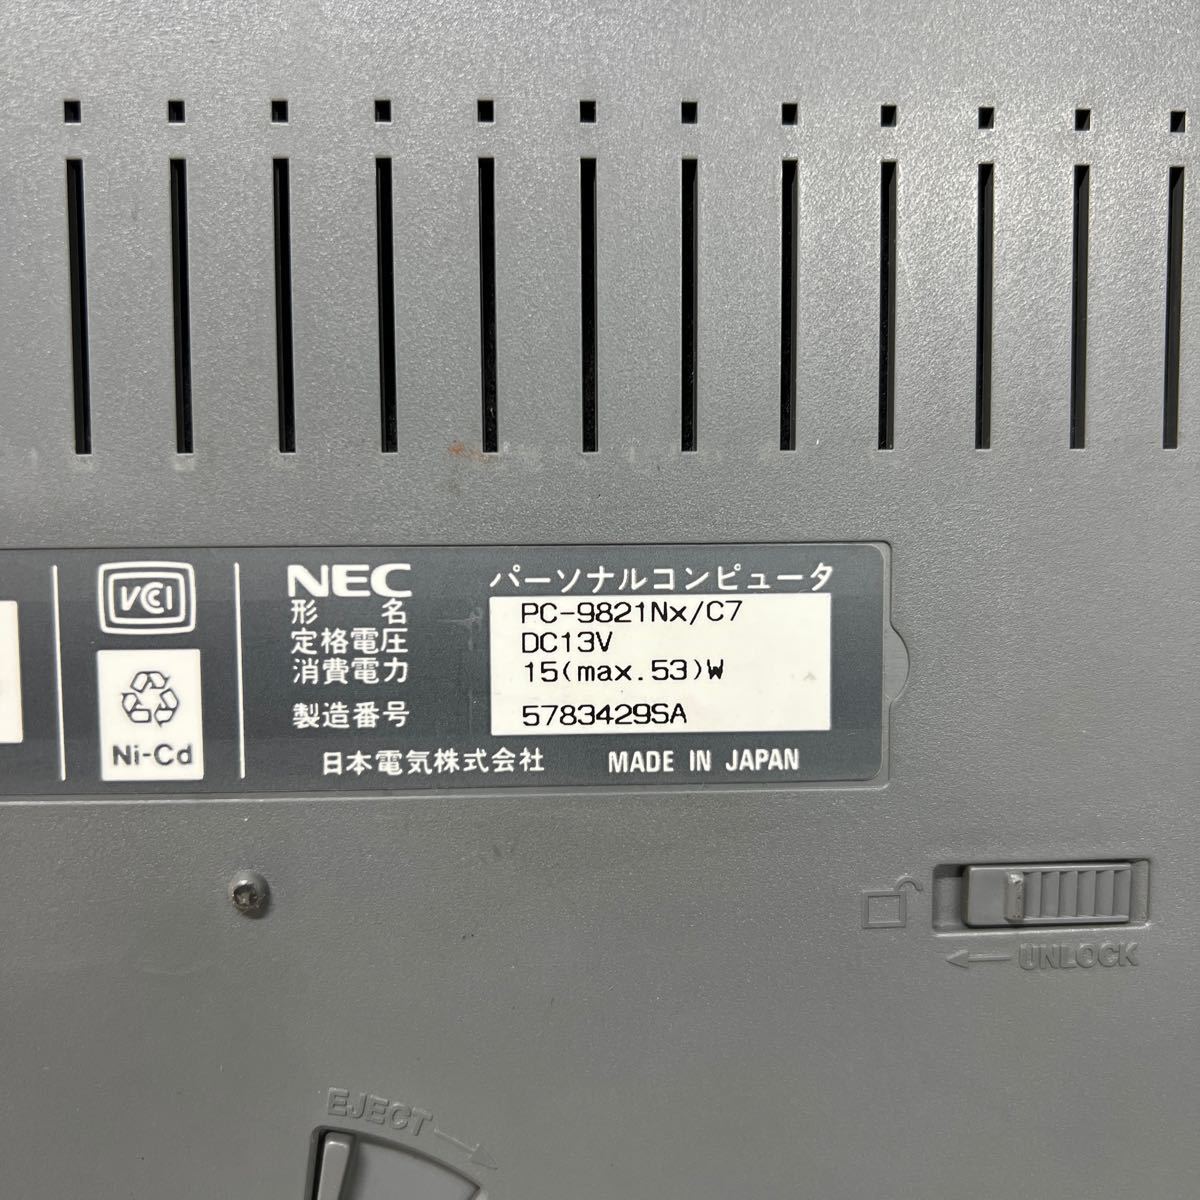 PCN98-783 激安 PC98 ノートブック NEC PC-9821Nx/C7 起動確認済み ジャンク_画像9